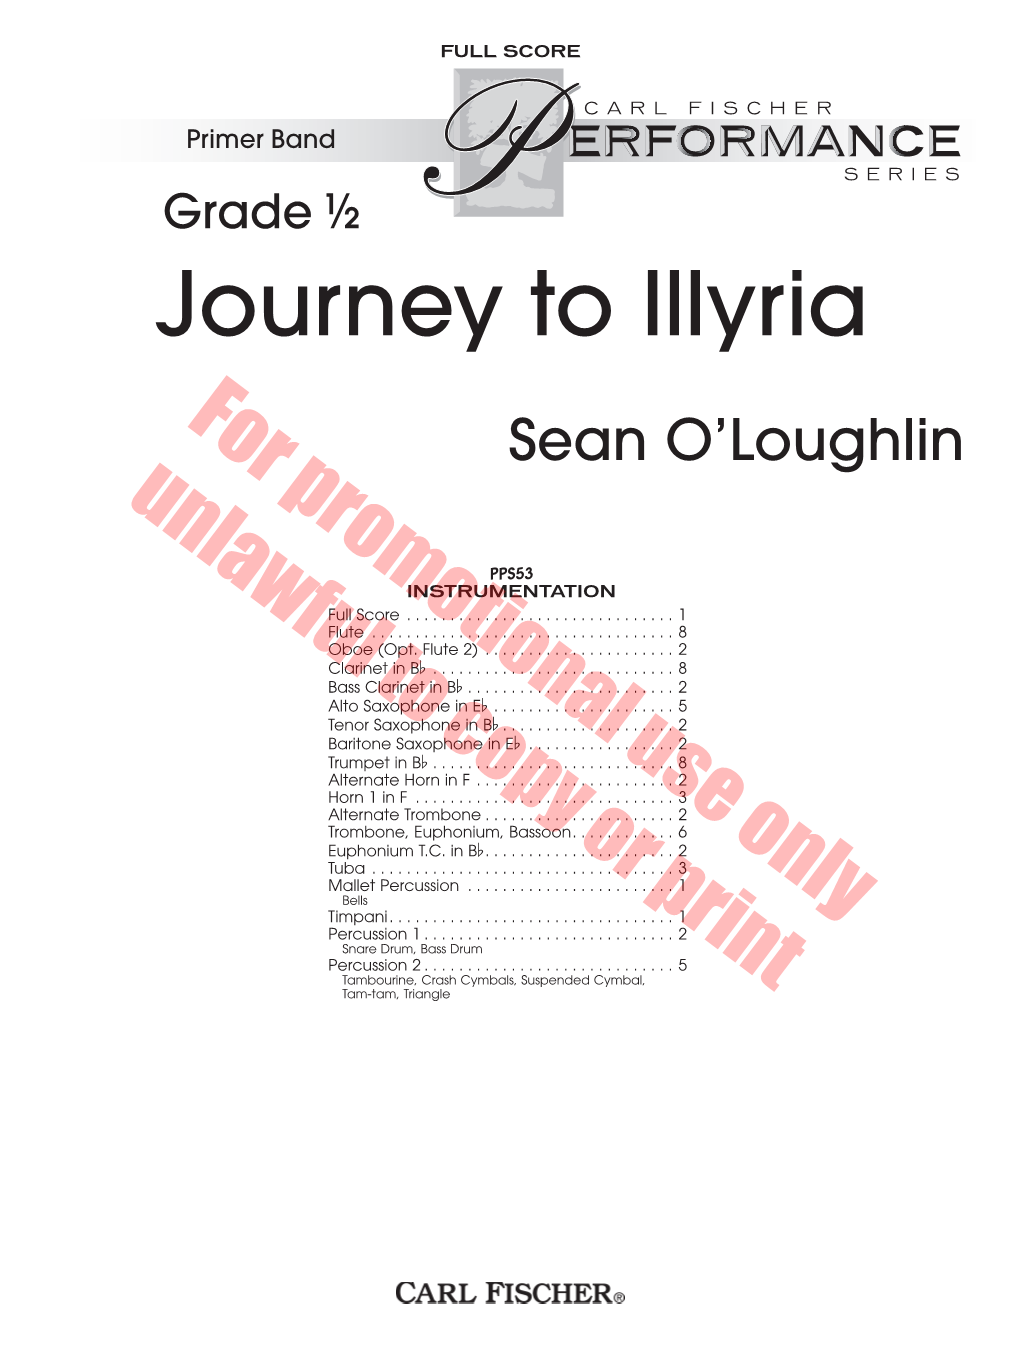 Journey to Illyria